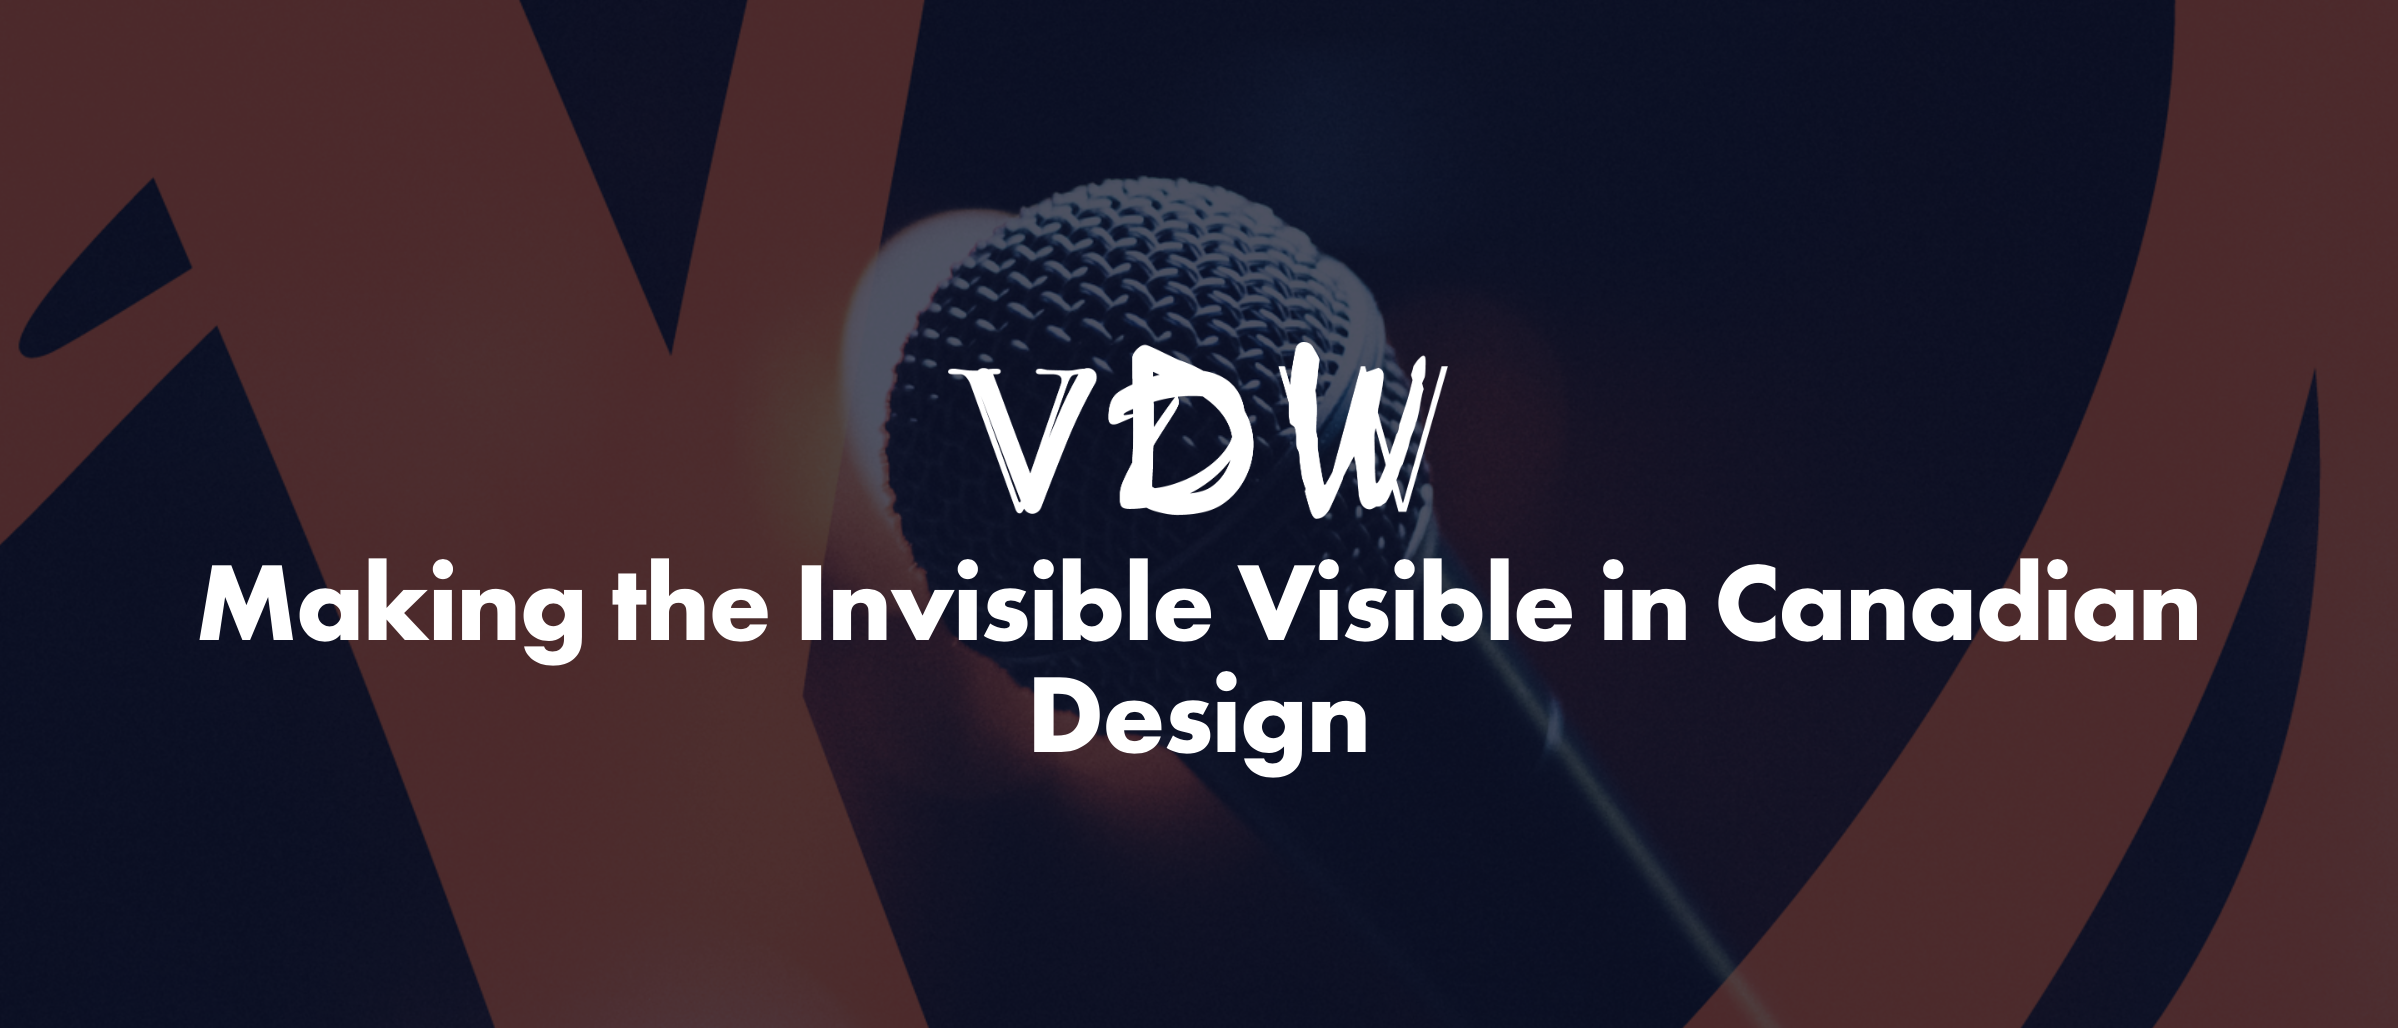 Ecuad Vdw Invisible